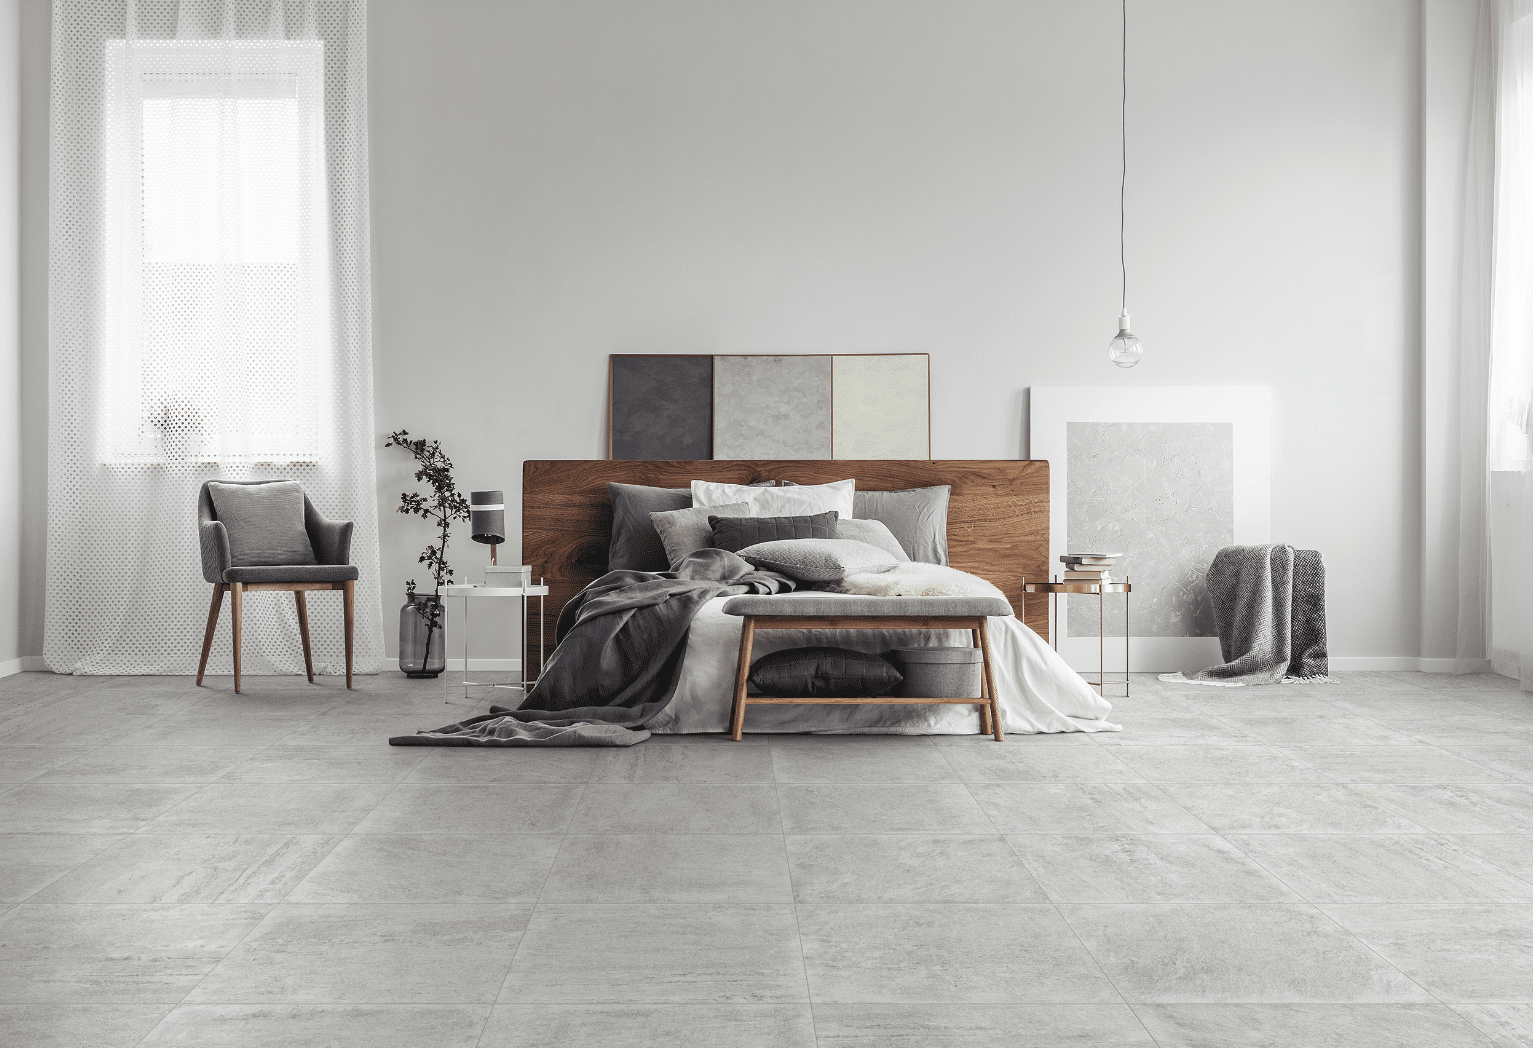 C. Bergmann zeigt ein grau gefliestes Schlafzimmer mit einem Doppelbett aus Holz , grauem und weissen Bezug vor einer weissen Wand von Abitare.